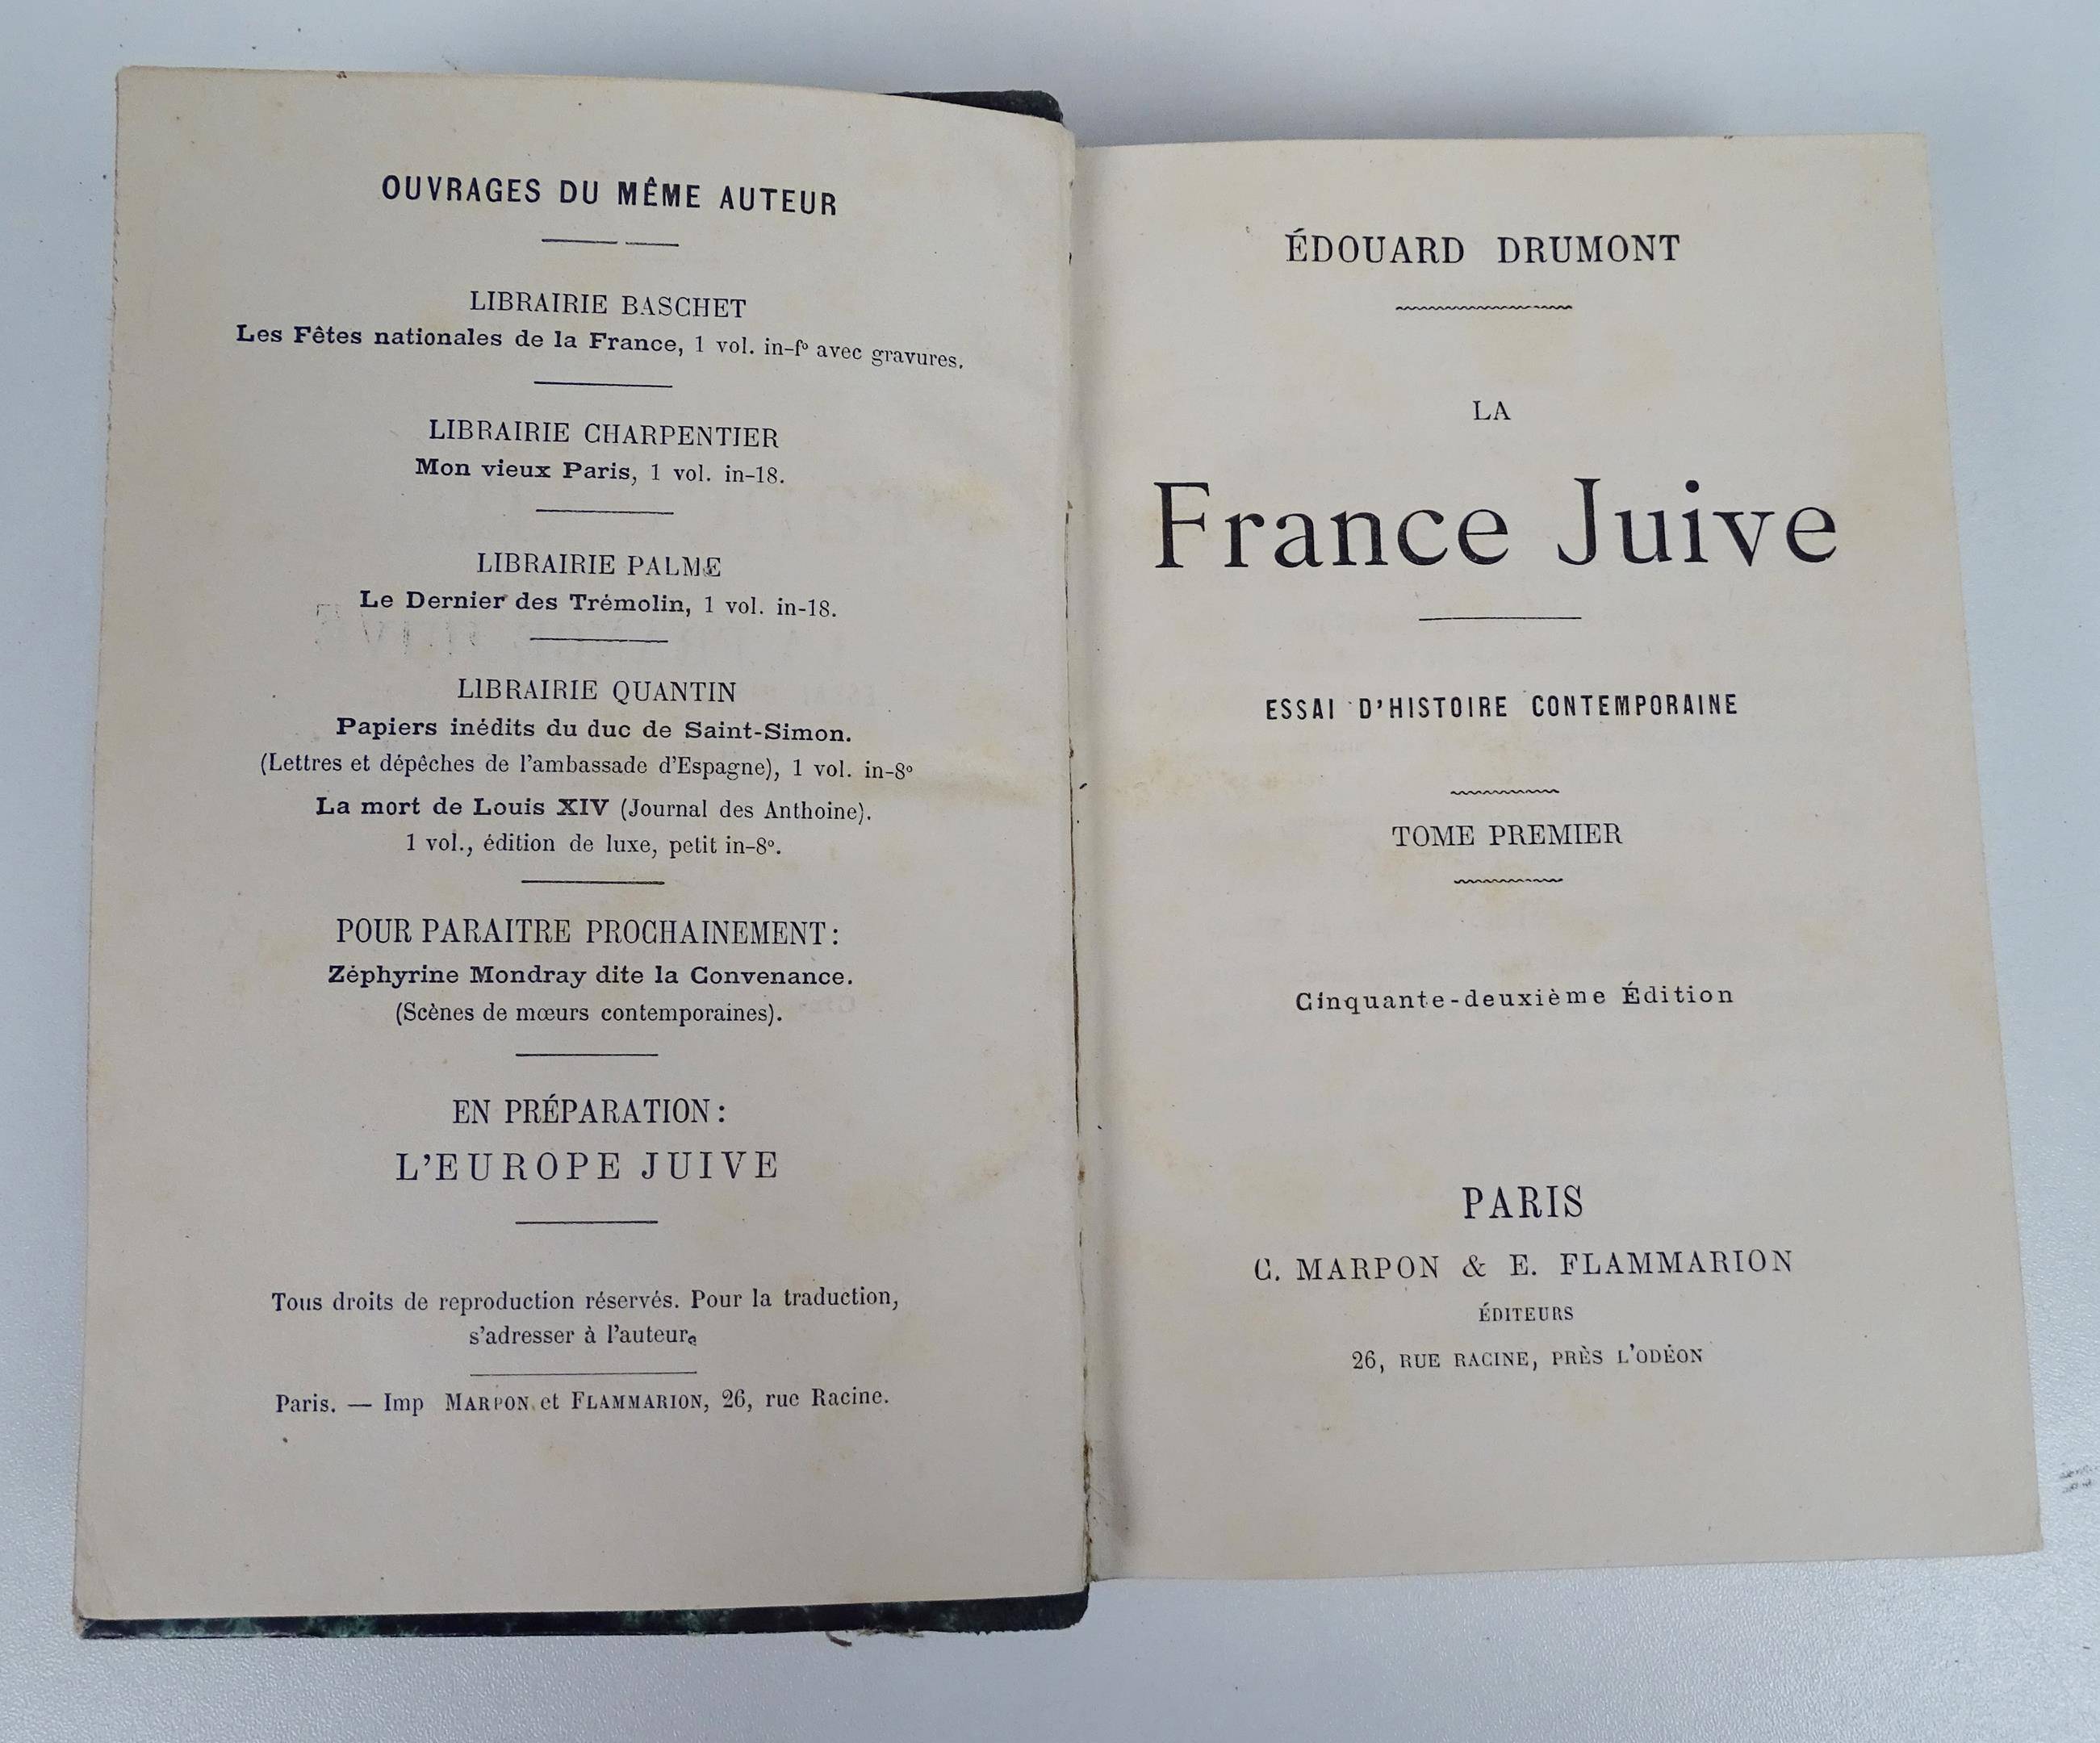 DRUMONT, Edouard - La France Juive. Essai d'histoire contemporaine - Ed